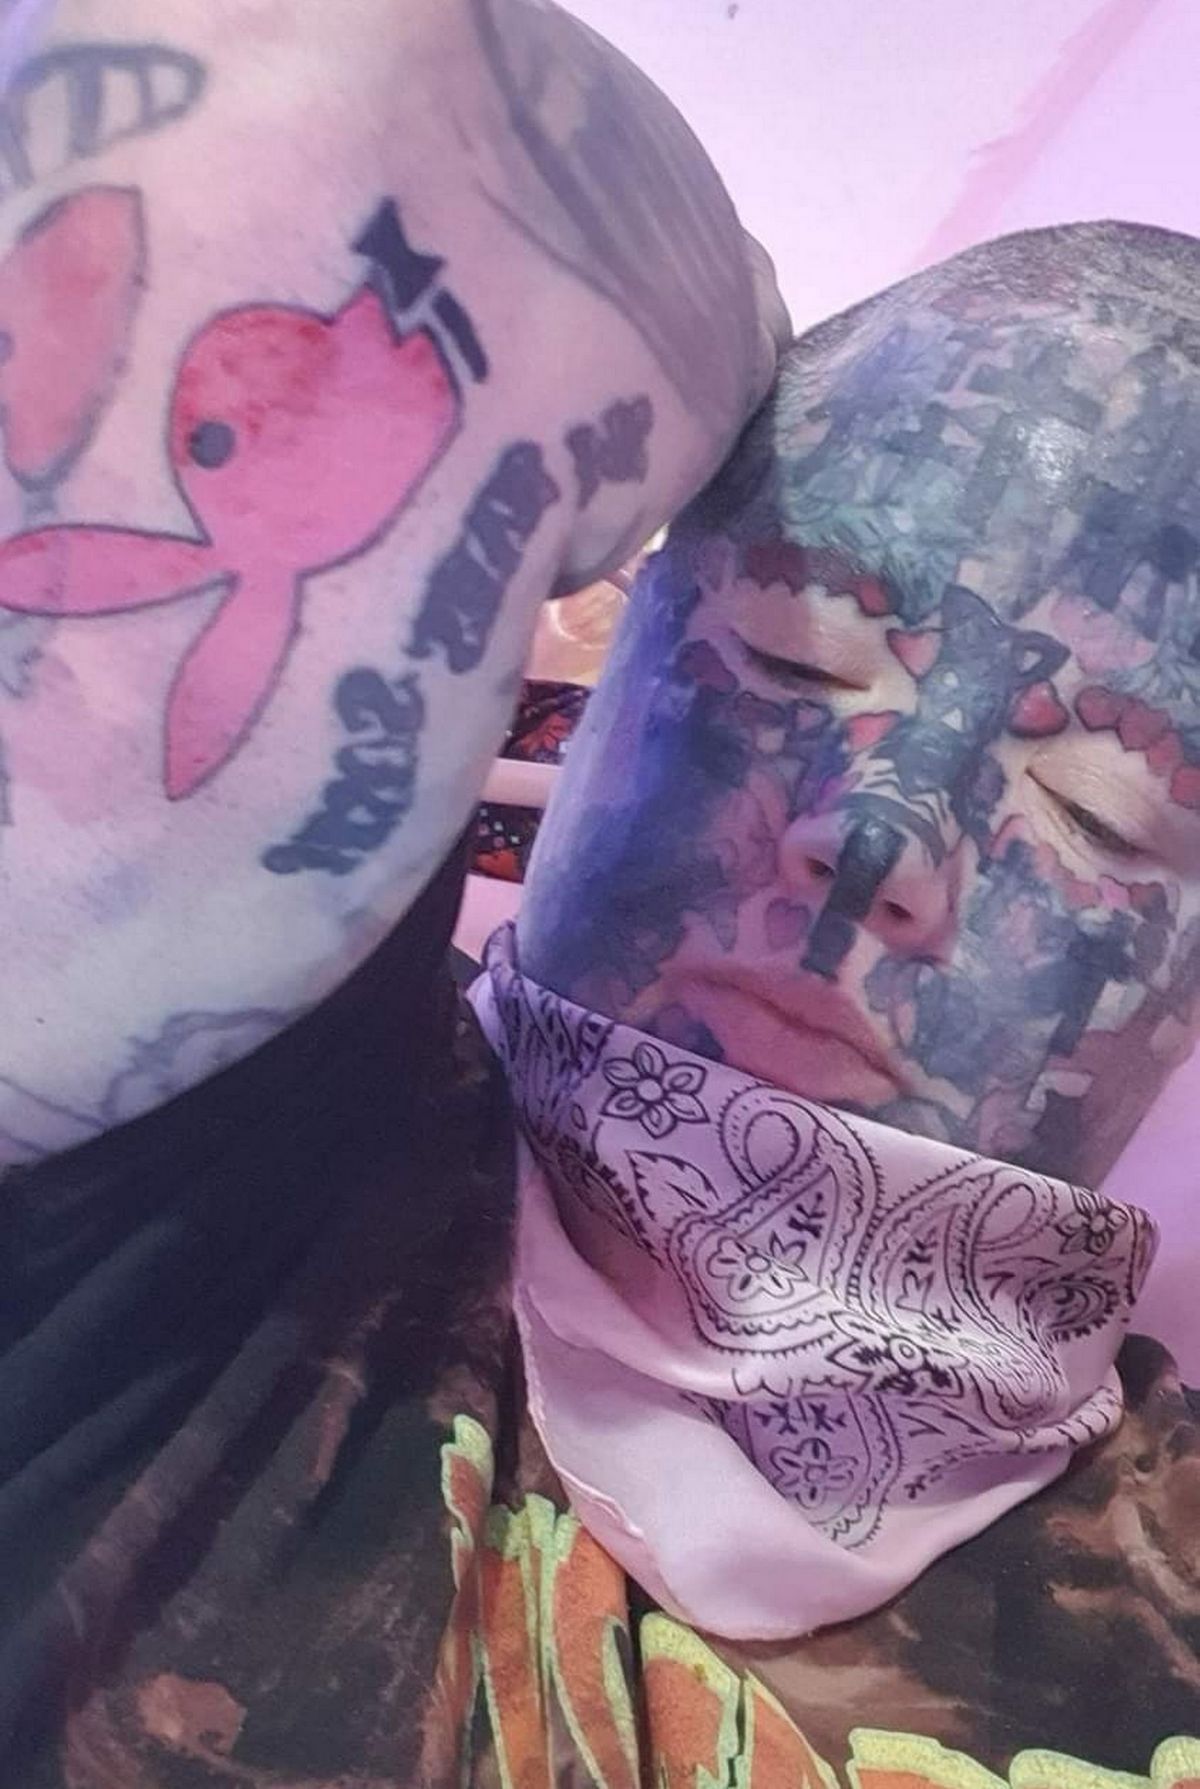 Les salons de tatouage lui ont interdit de se faire tatouer le visage, ce qui a rendu difficile l'obtention de tatouages à certains endroits.